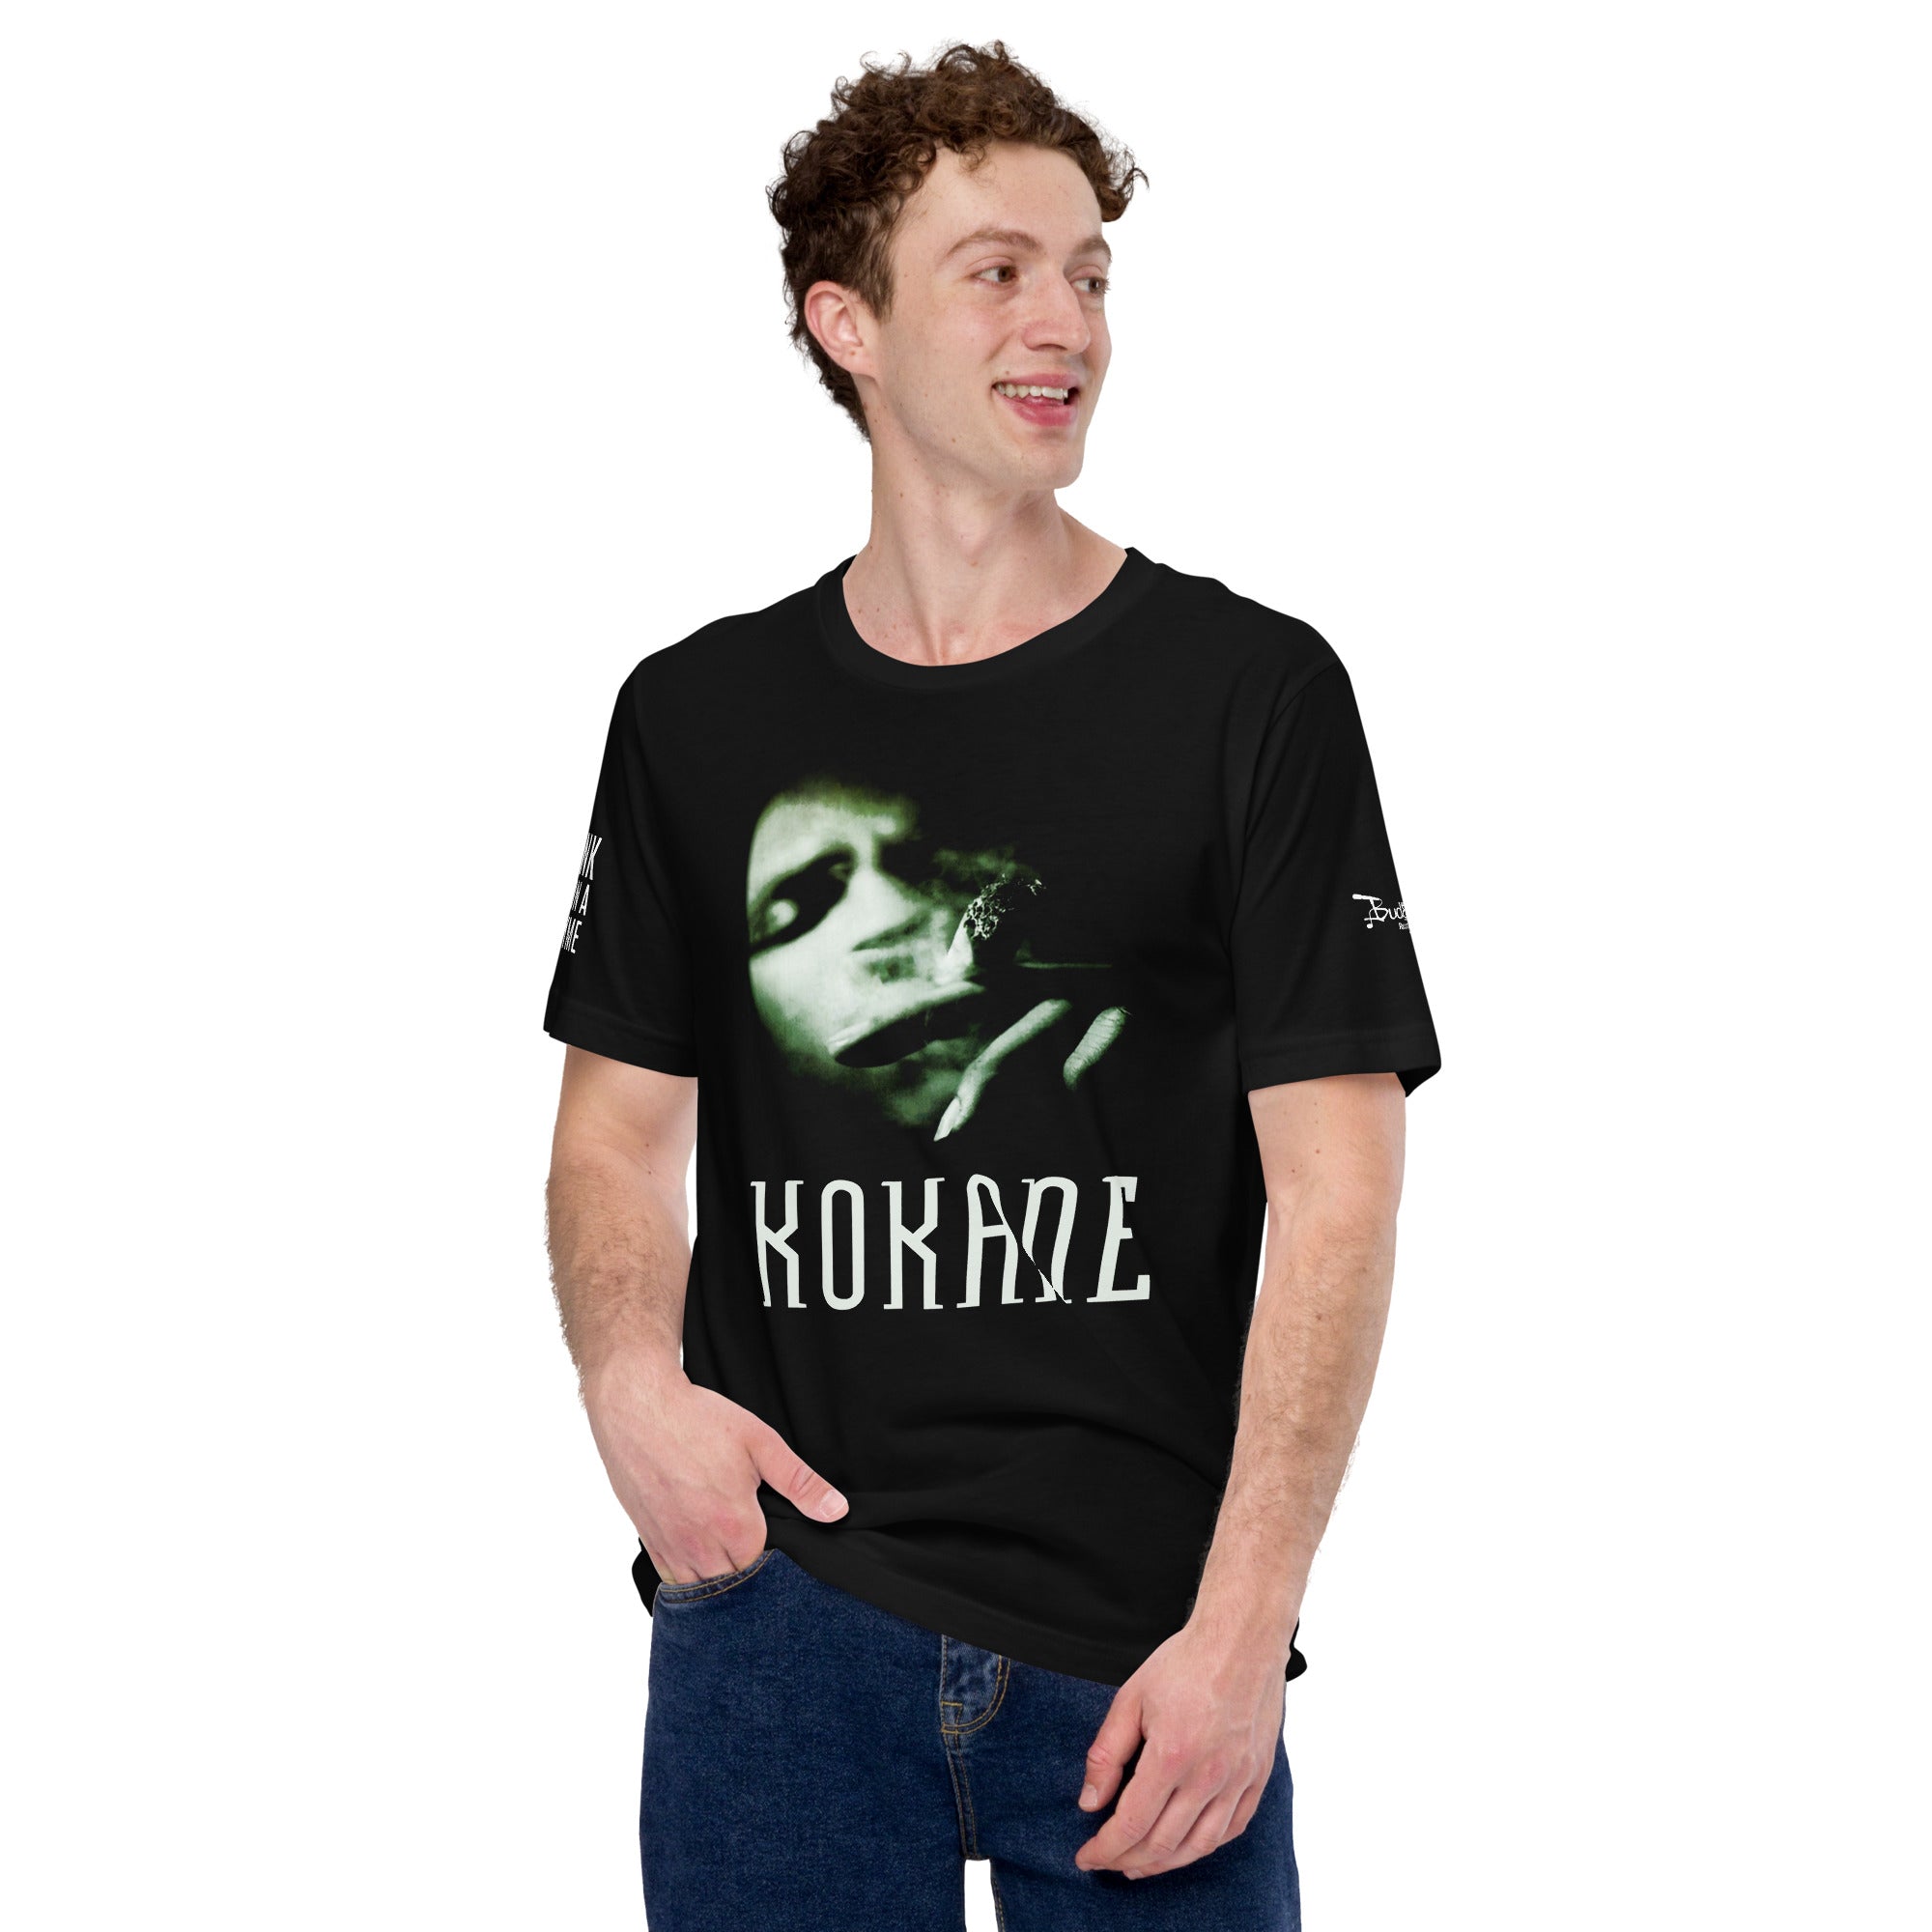 Kokane Funk Upon A Rhyme [T-Shirt]